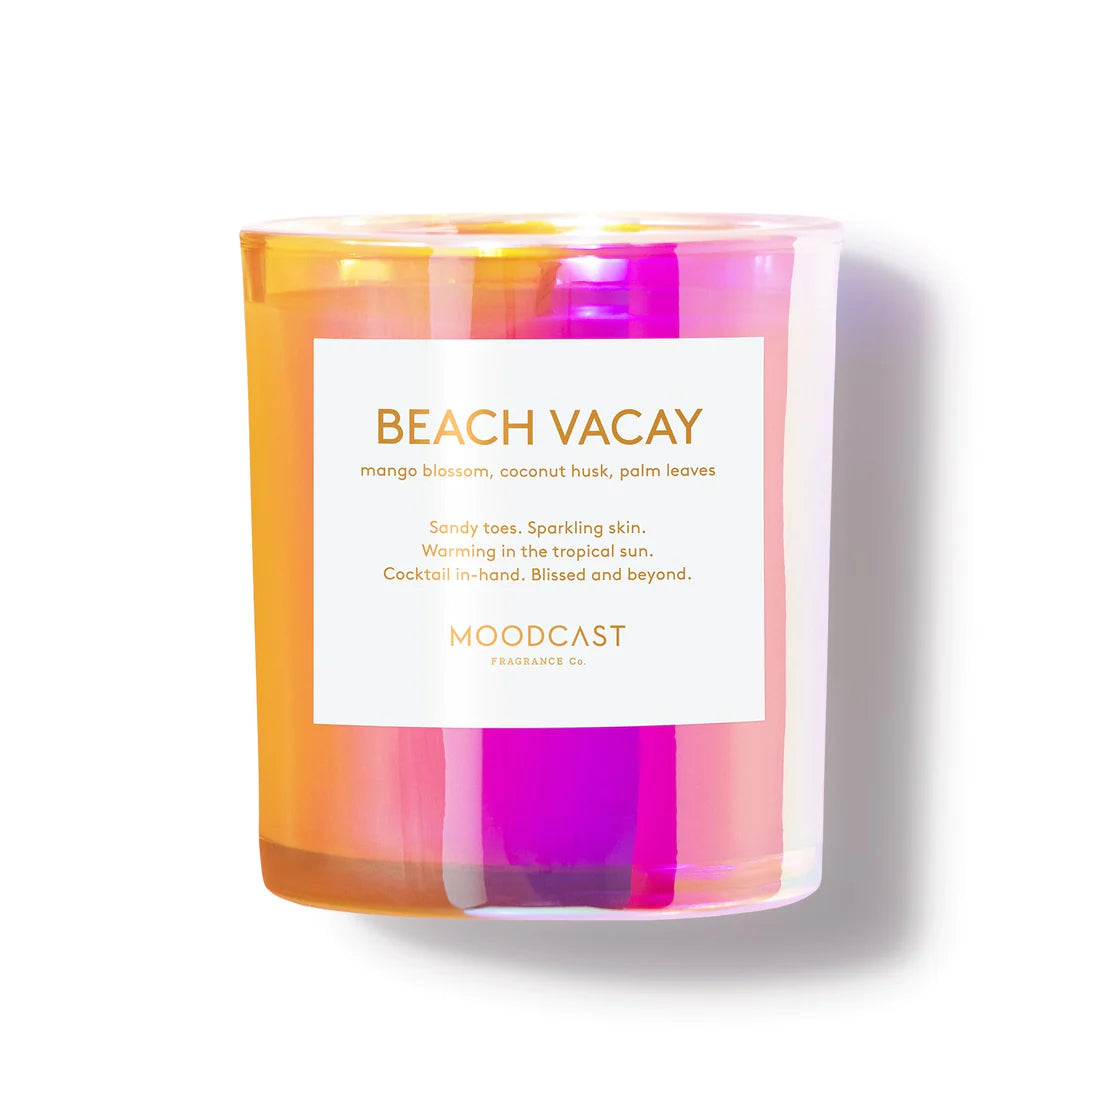 Moodcast Fragrance Co. Beach Vacay Candle 8oz.